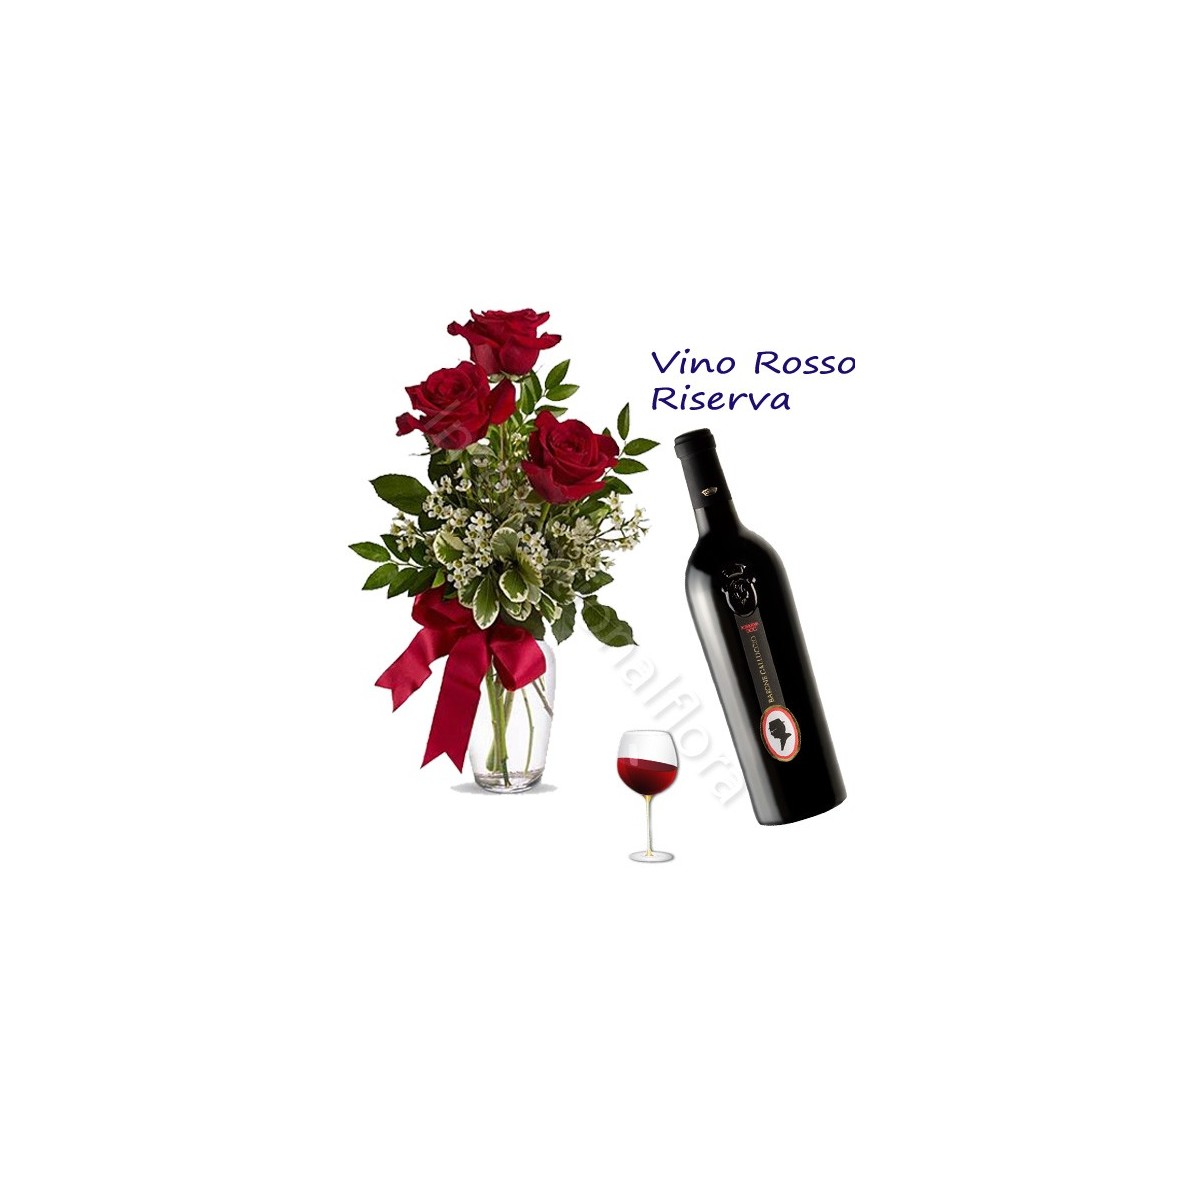 Bottiglia di Vino Rosso Riserva con Bouquet di 3 Rose rosse